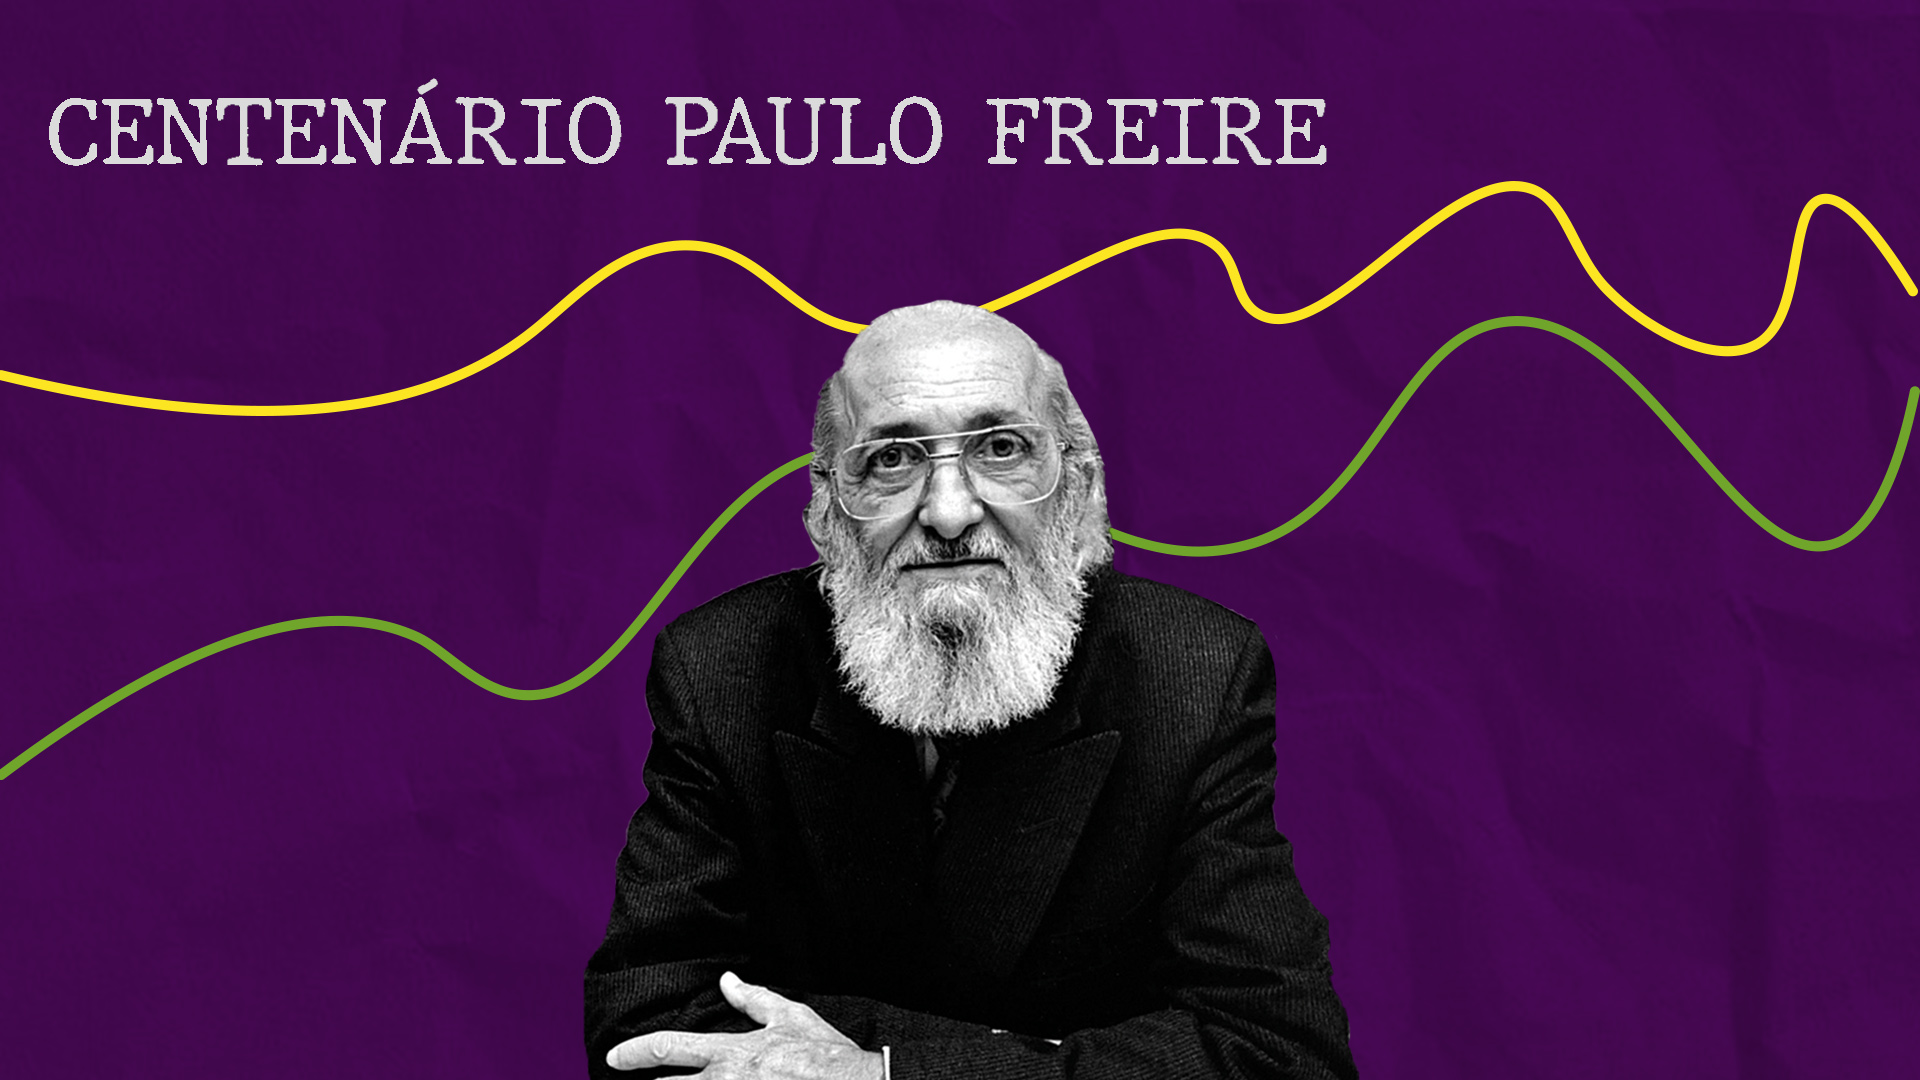 Vídeos produzidos em homenagem ao centenário Paulo Freire